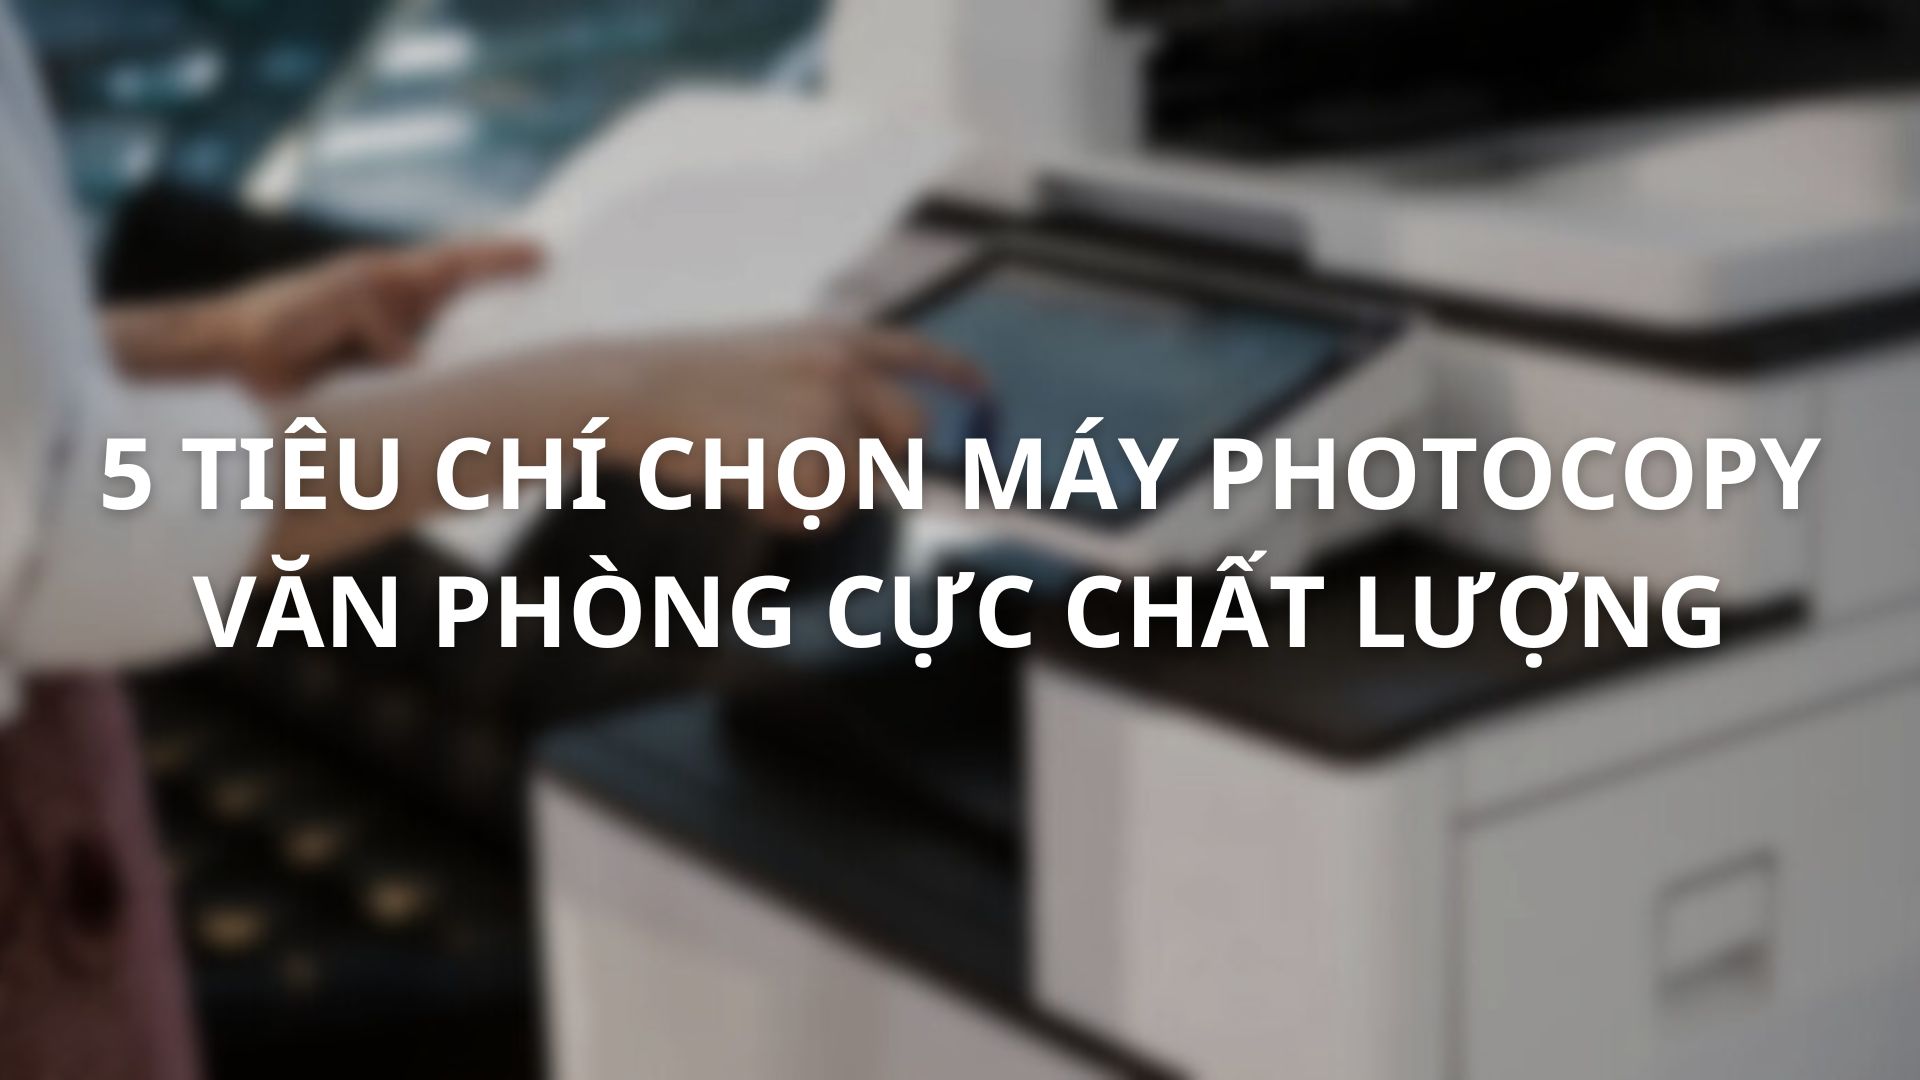 5-tieu-chi-lua-chon-may-photocopy-van-phong-cuc-chat-luong-01